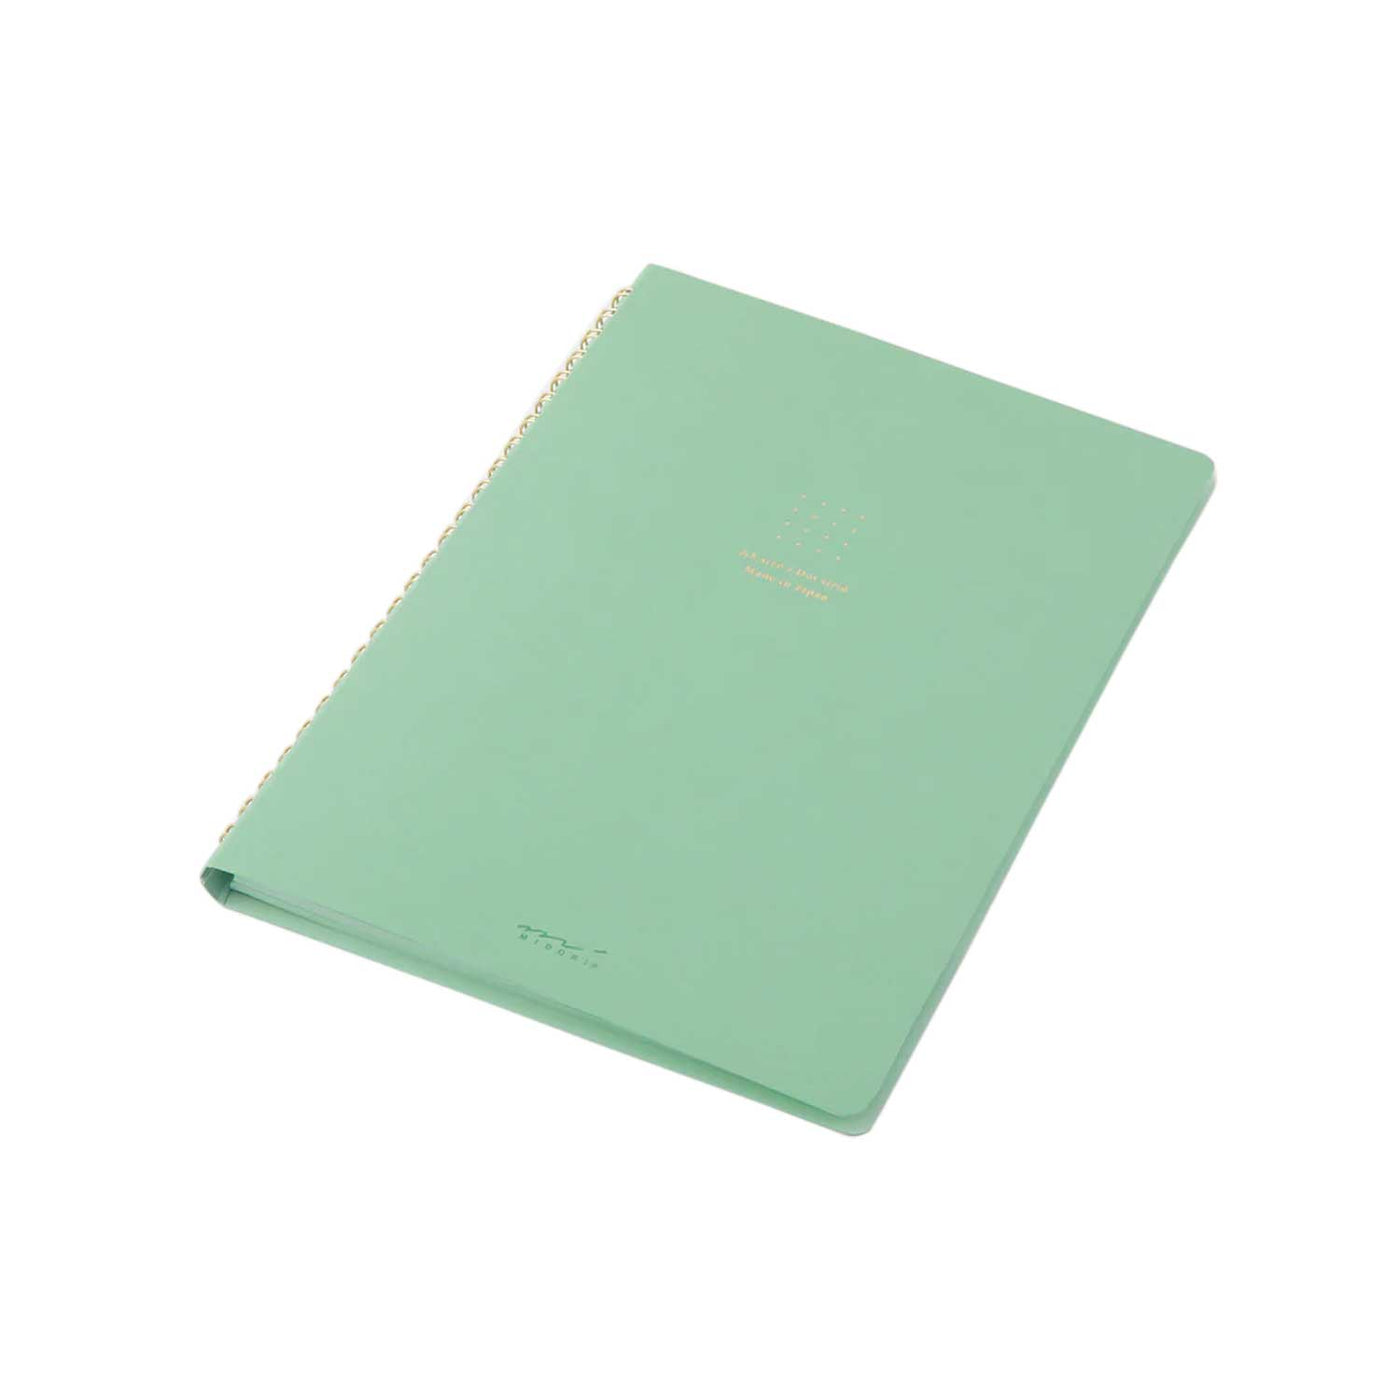 Midori Soft Colour Green Spiral Notebook - A5 Dotted 2